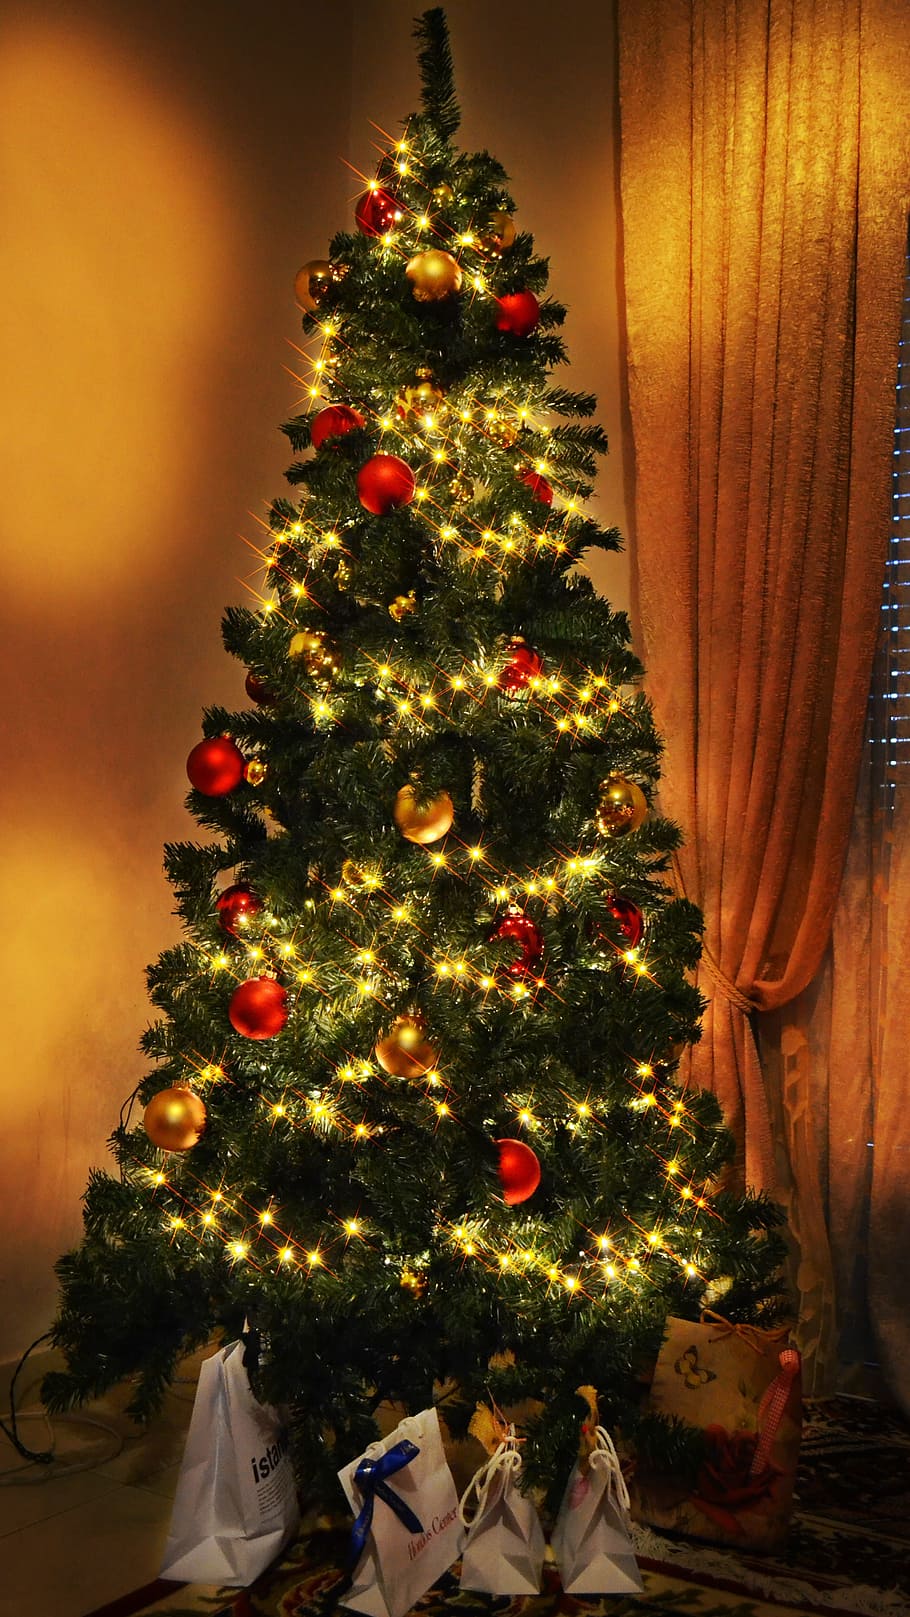 Christmas Tree, Lights, Love, christmas, christmas tree, lights, holidays, family time, warm, red, gold